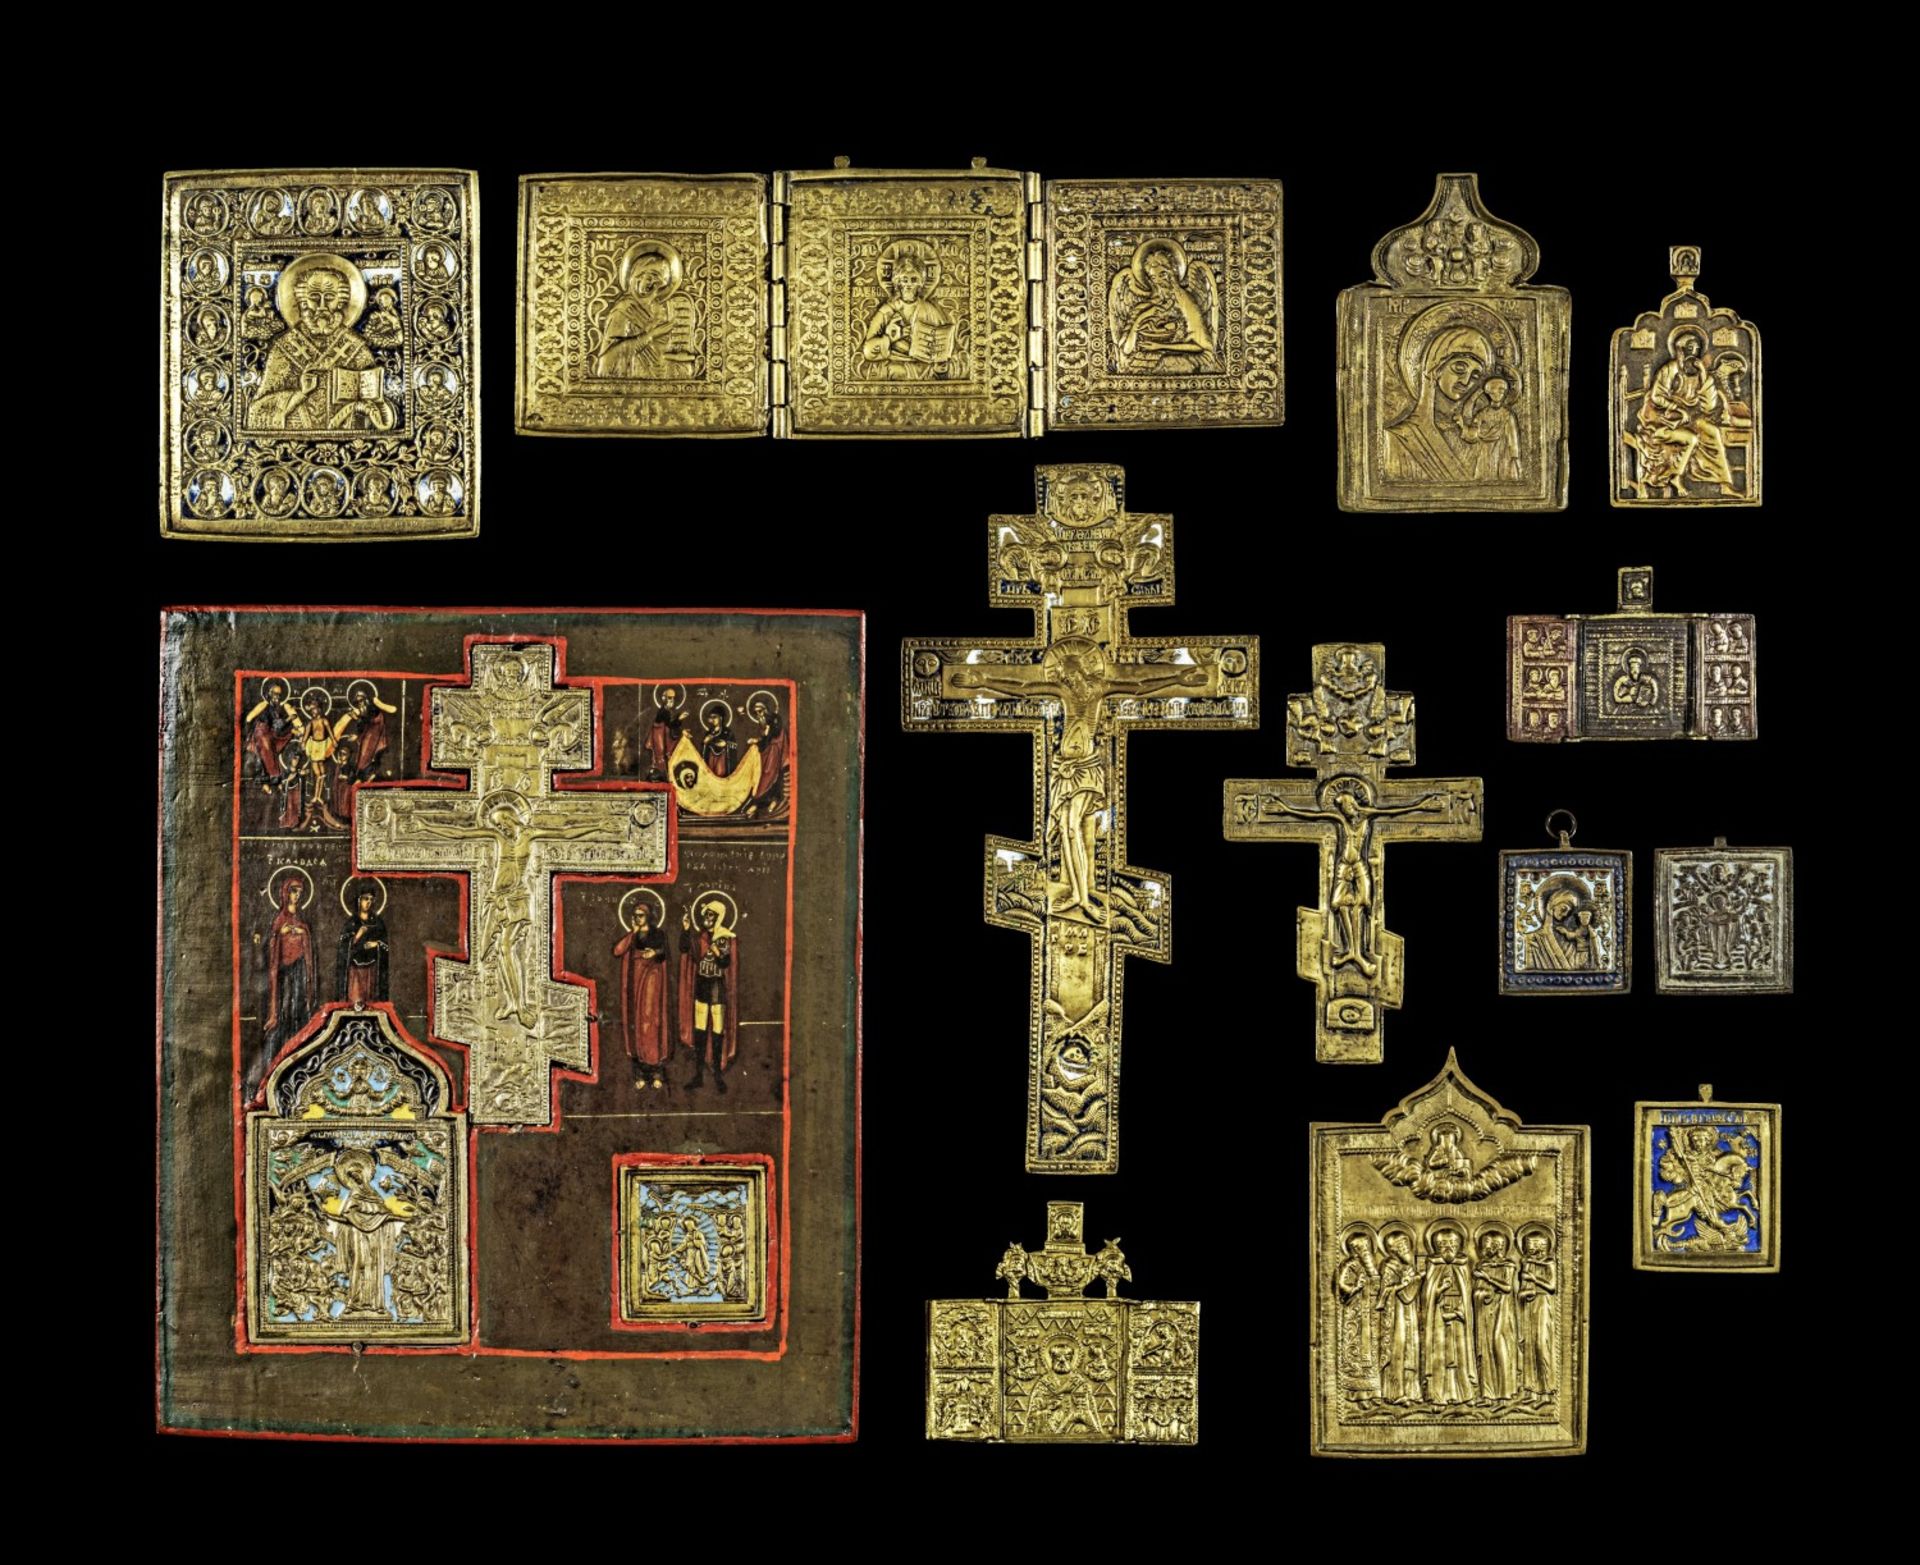 Sammlung von einer Holzikone, Kruzifixen und Bronze-Ikonen mit ausgewählten Heiligen.